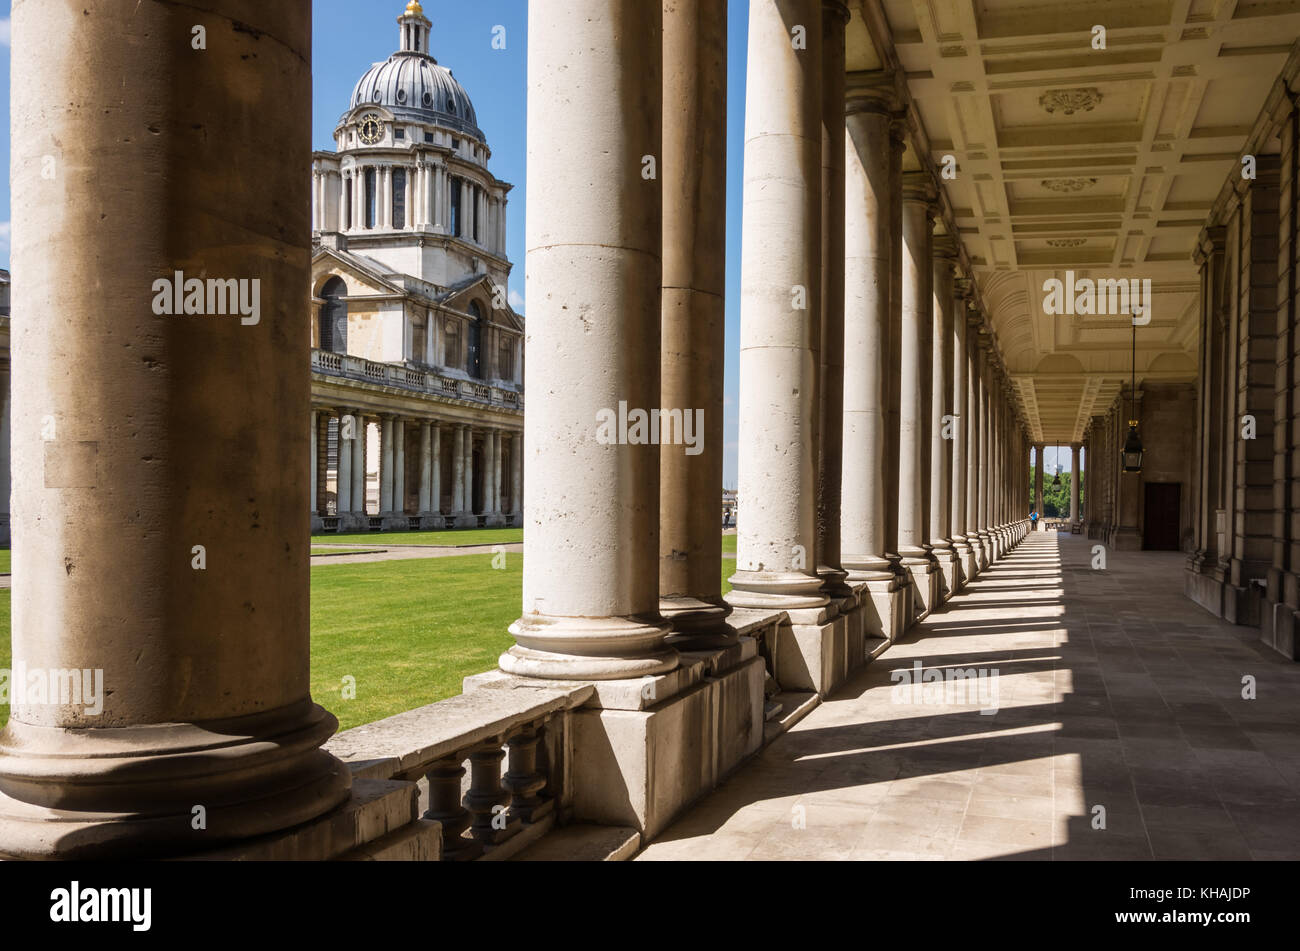 Le long de la colonnade de la cour de l'université, Université de Greenwich, London, England, UK Banque D'Images